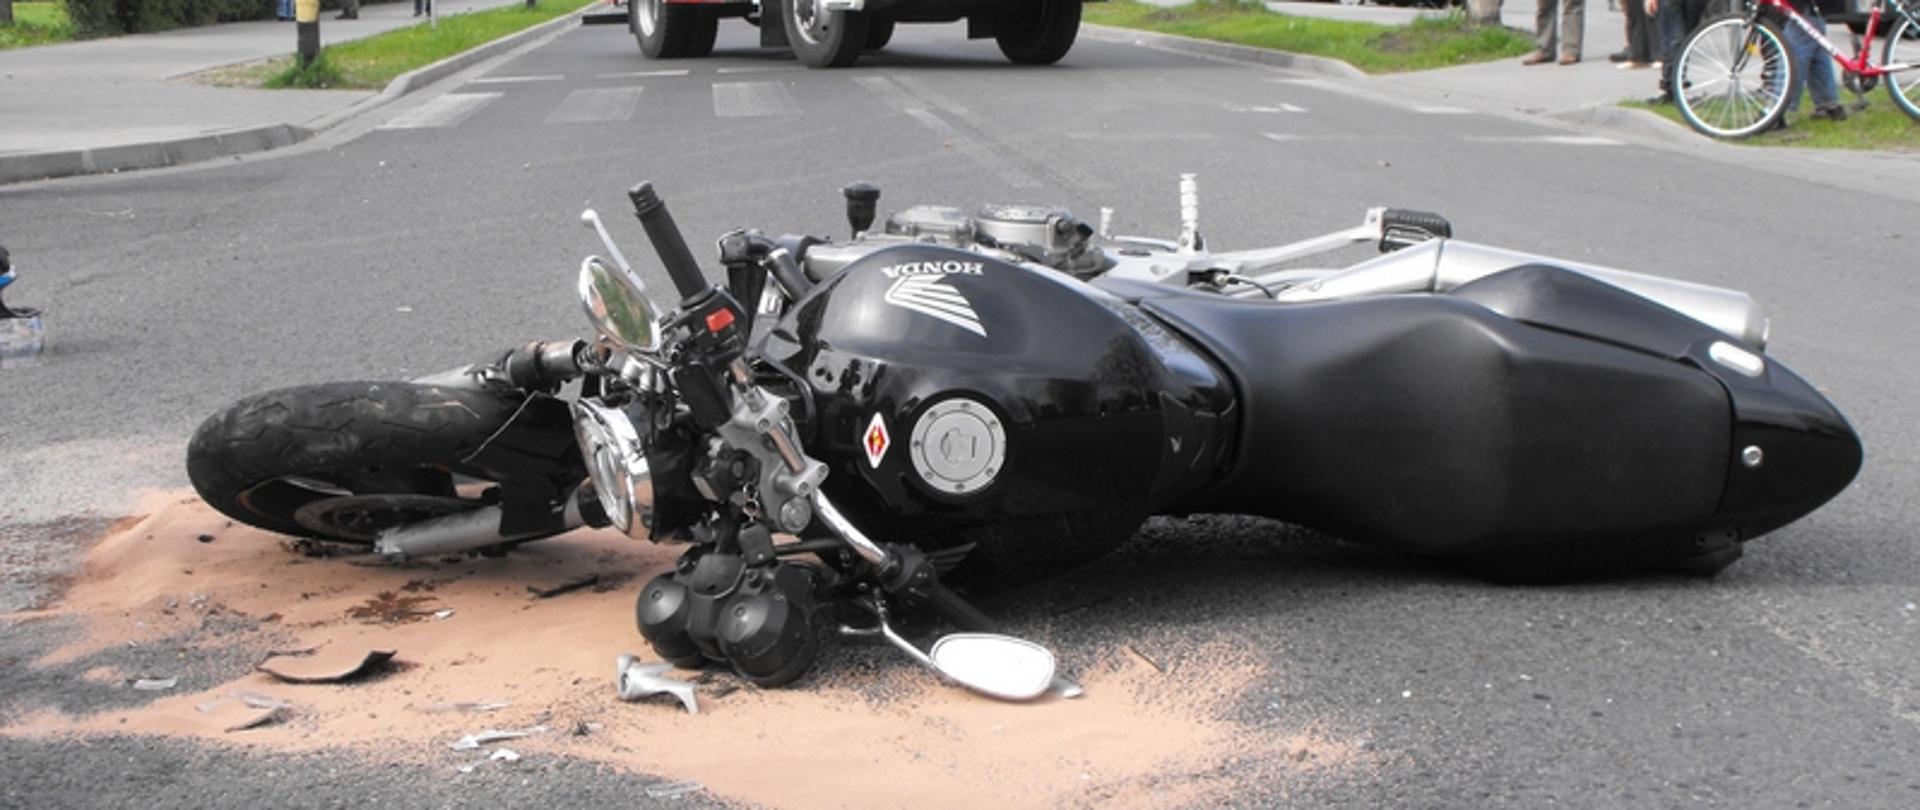 Zdjęcie przedstawia rozbity motocykl na drodze w tle samochód gaśniczy